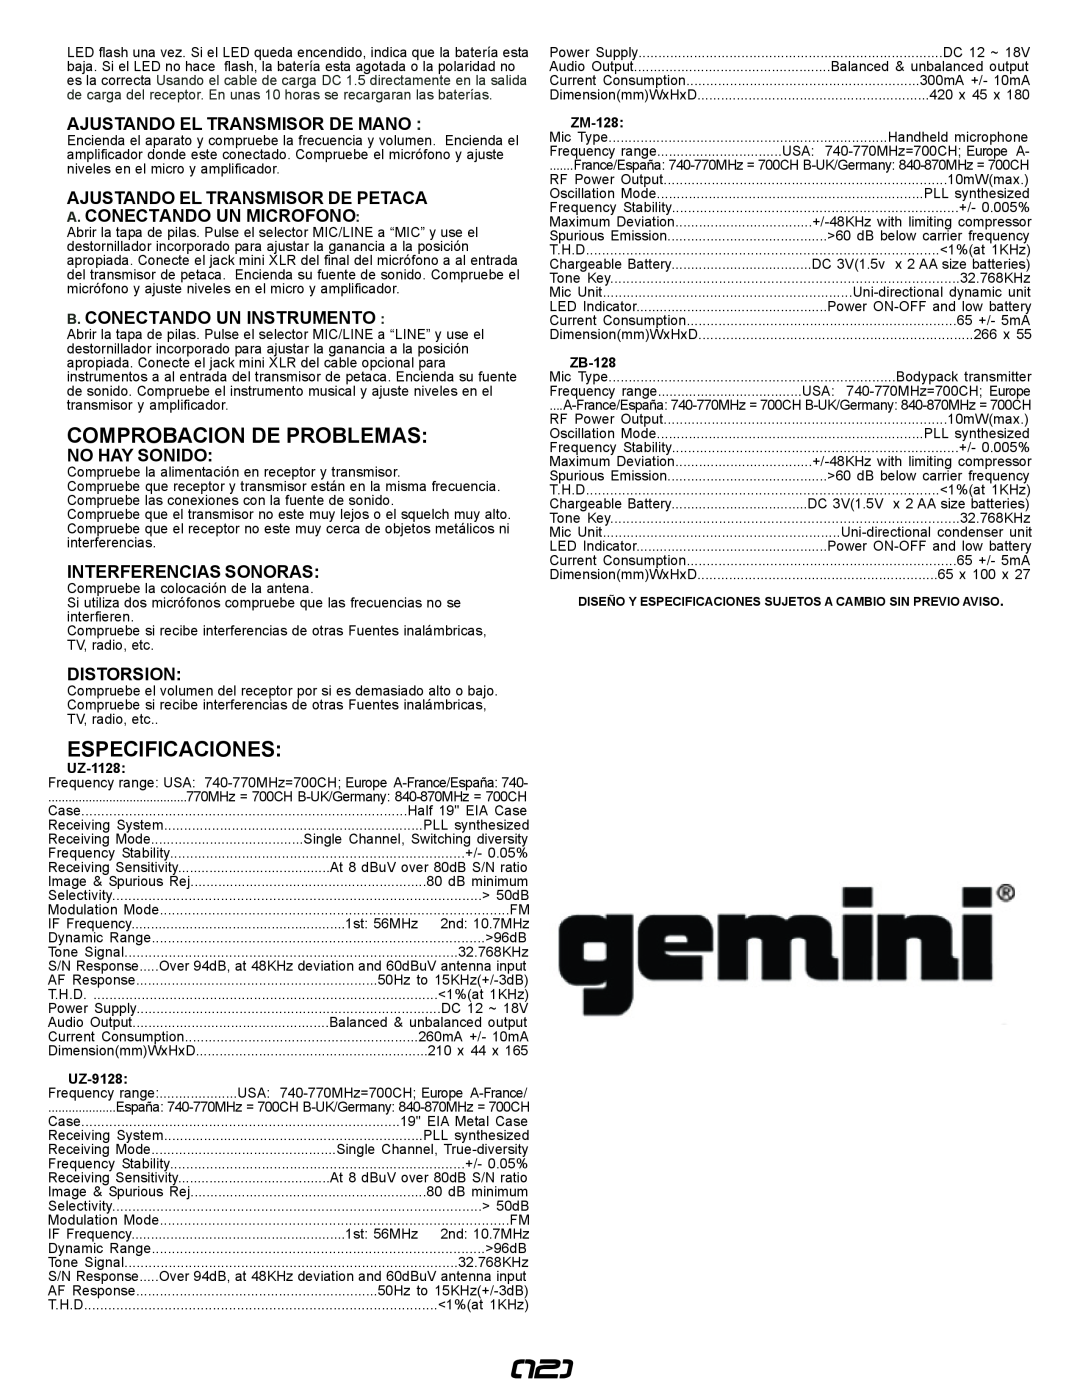 Gemini UZ-9128 Comprobacion De Problemas, Especificaciones, Ajustando El Transmisor De Mano, A. Conectando Un Microfono 